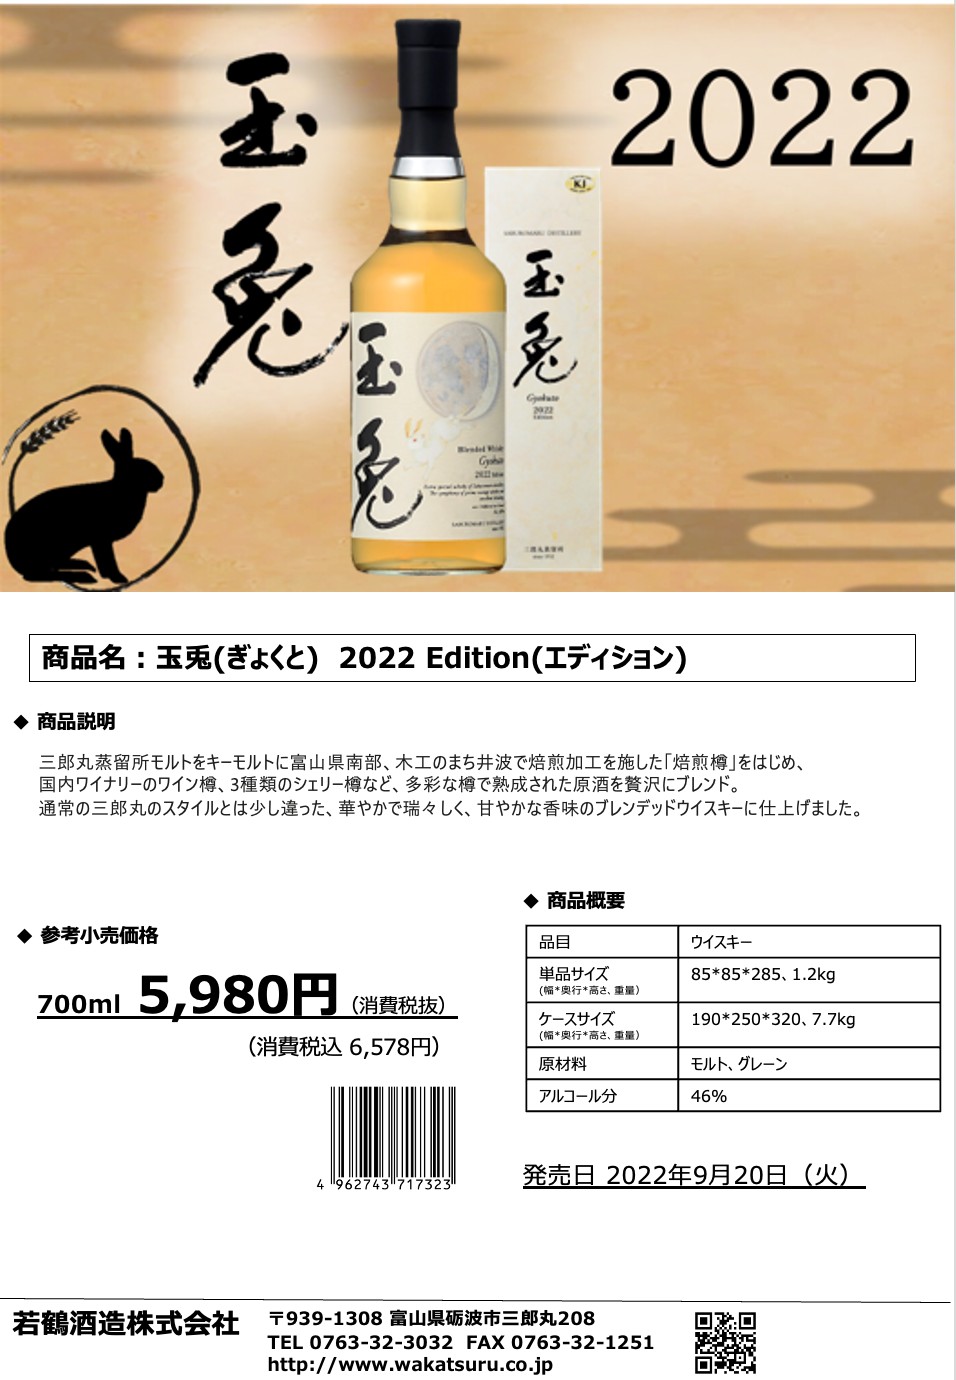 限定36本入荷❗️人気ウィスキー『玉兎 2022 Edition』6578円税込